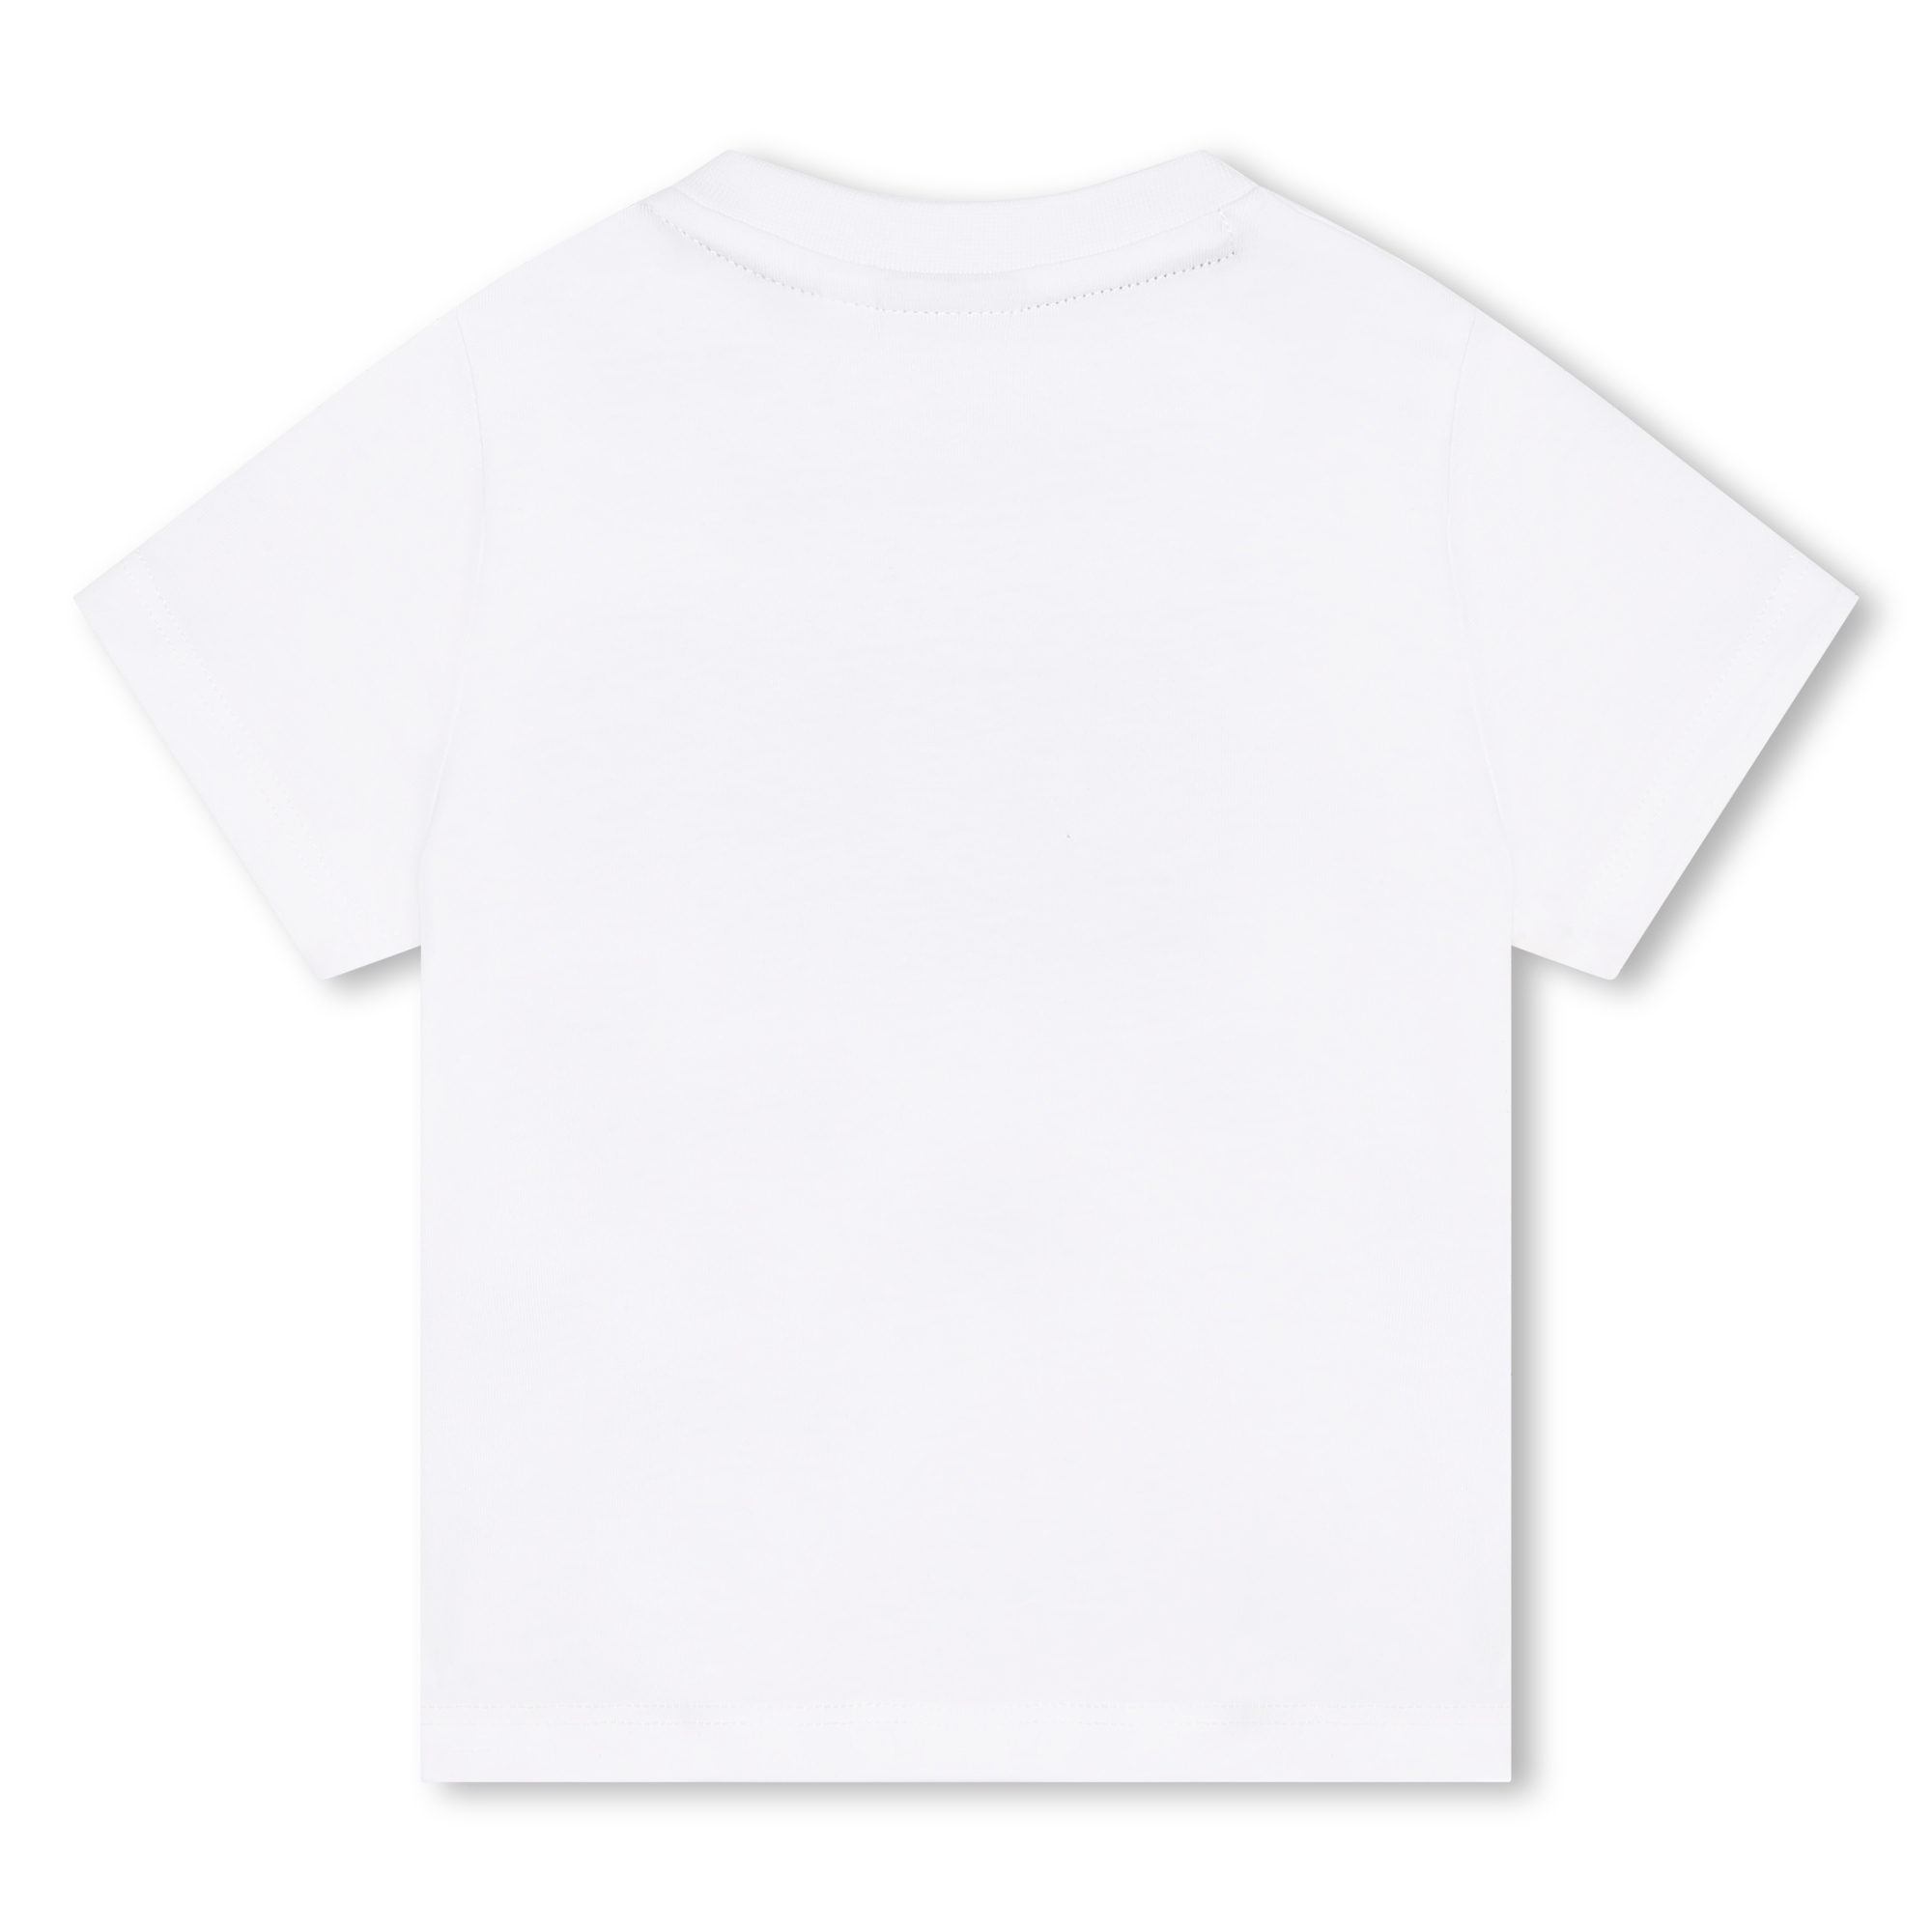 T-shirt à logo et monogramme BOSS pour GARCON